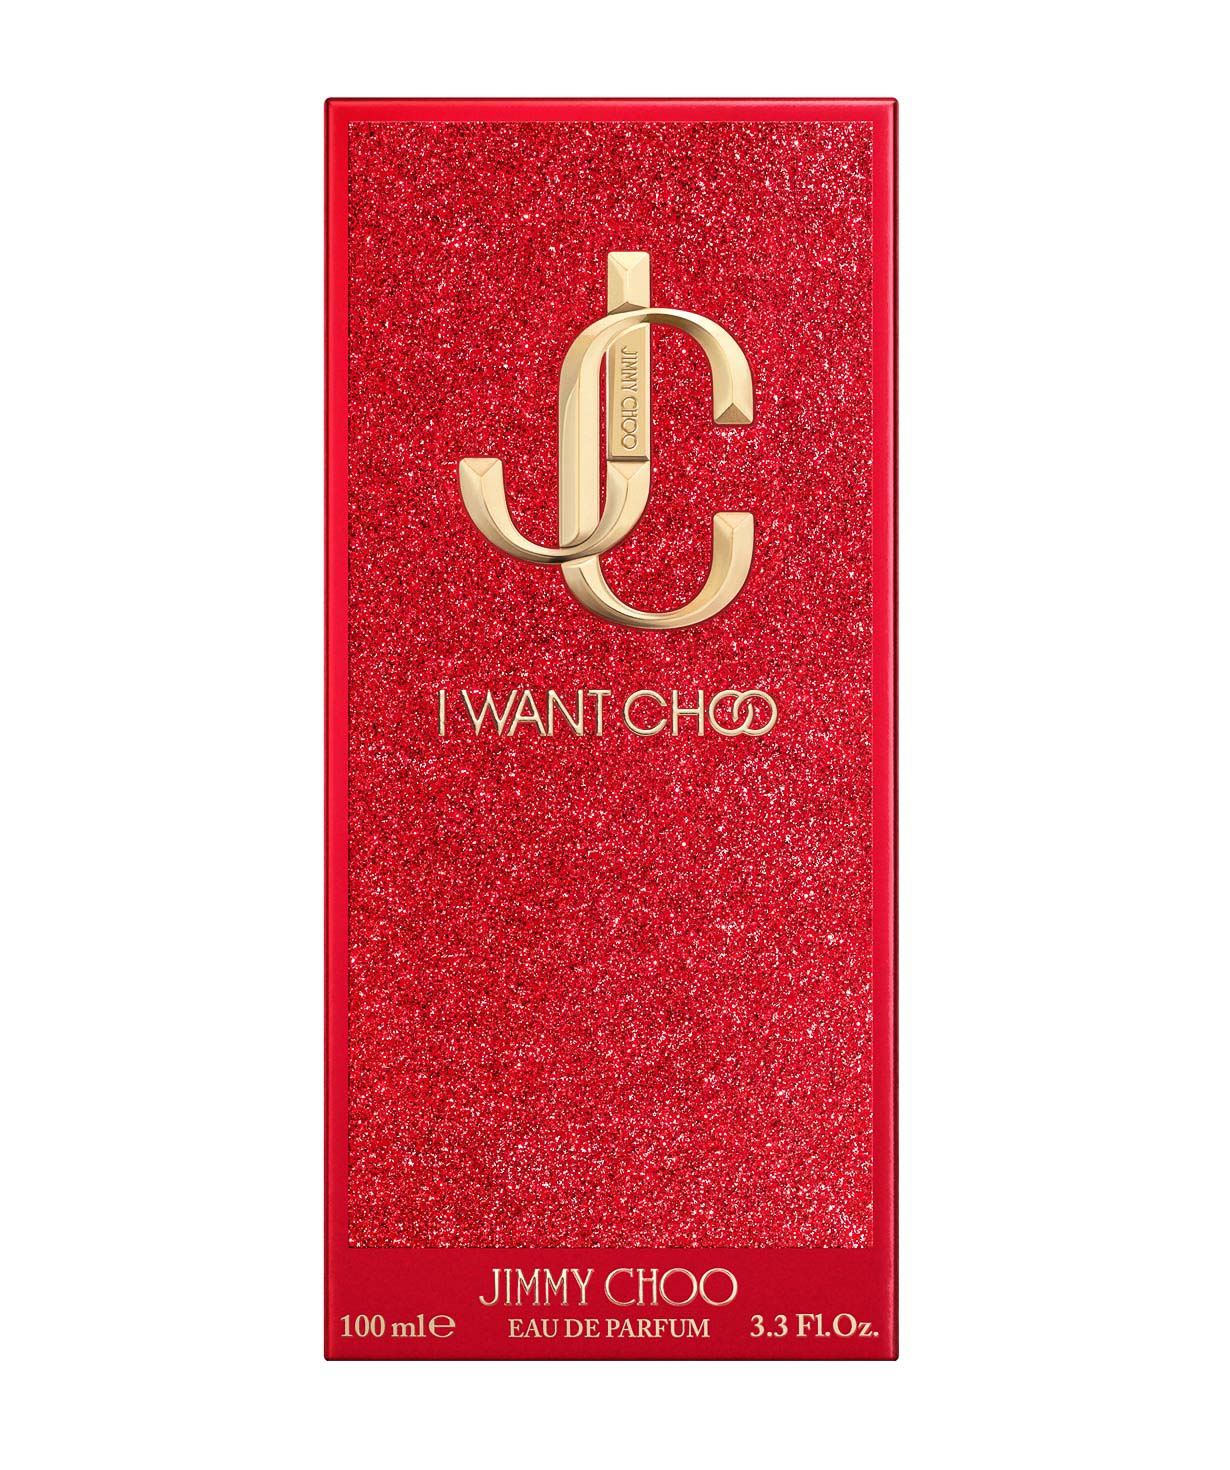 Perfume «Jimmy Choo» I Want Choo, for women, 100 ml